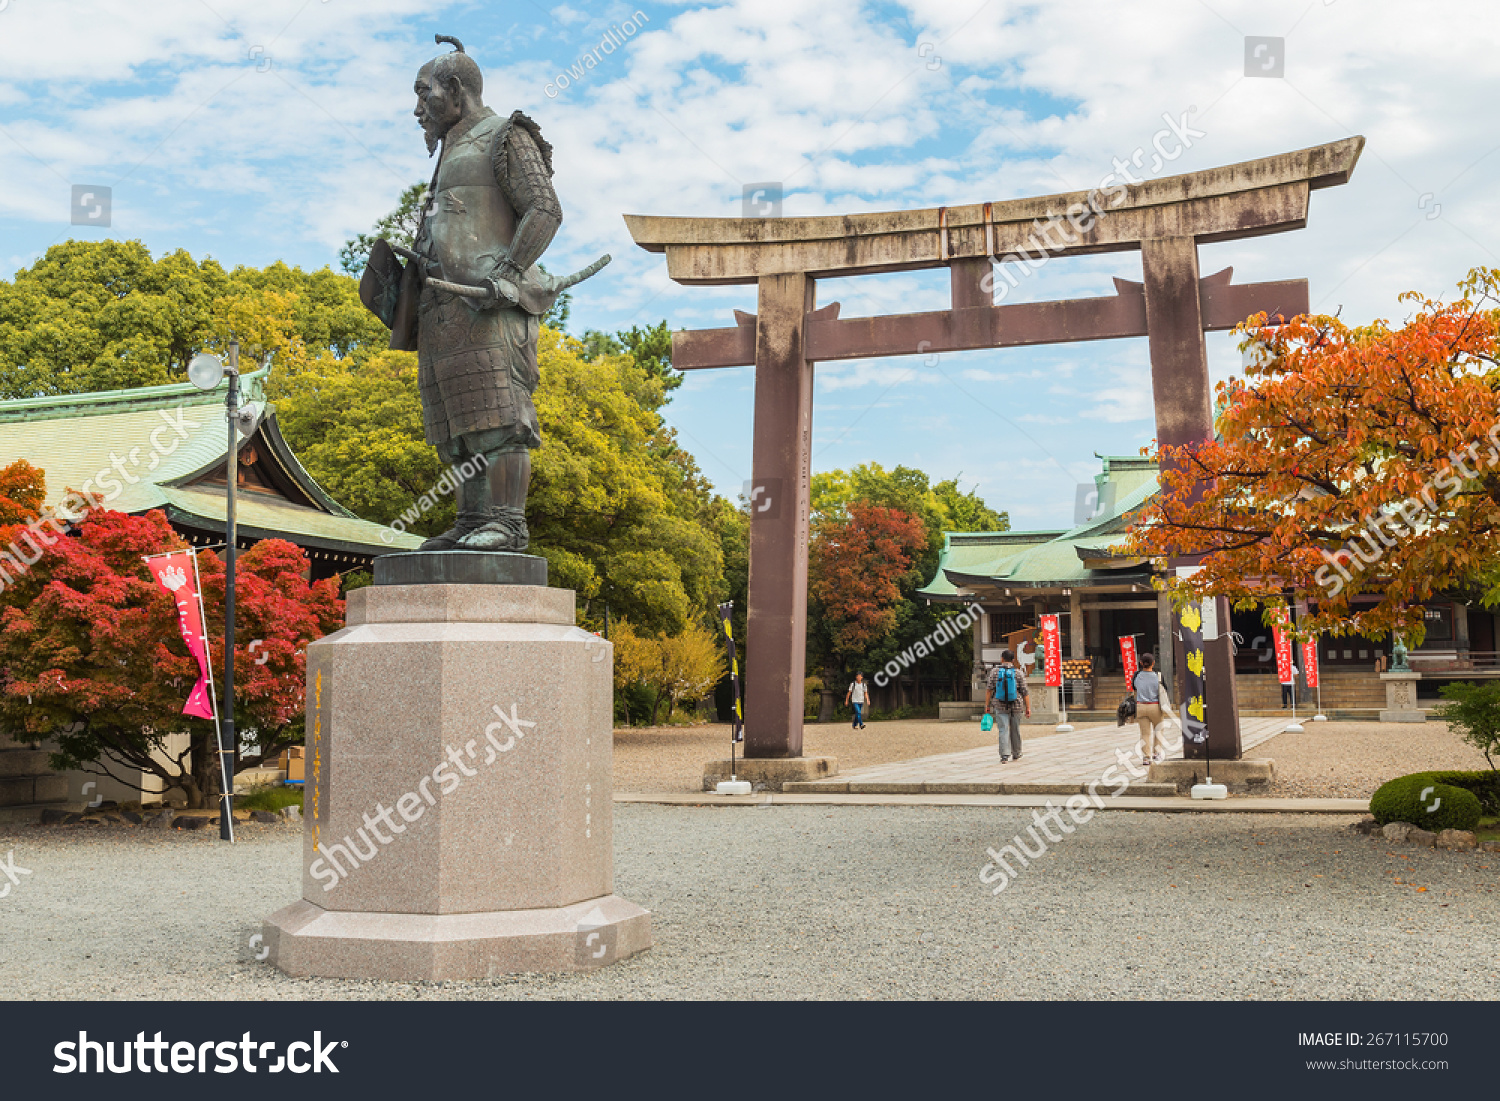 日本大阪- 10月25日:丰臣的雕像在大阪,日本于